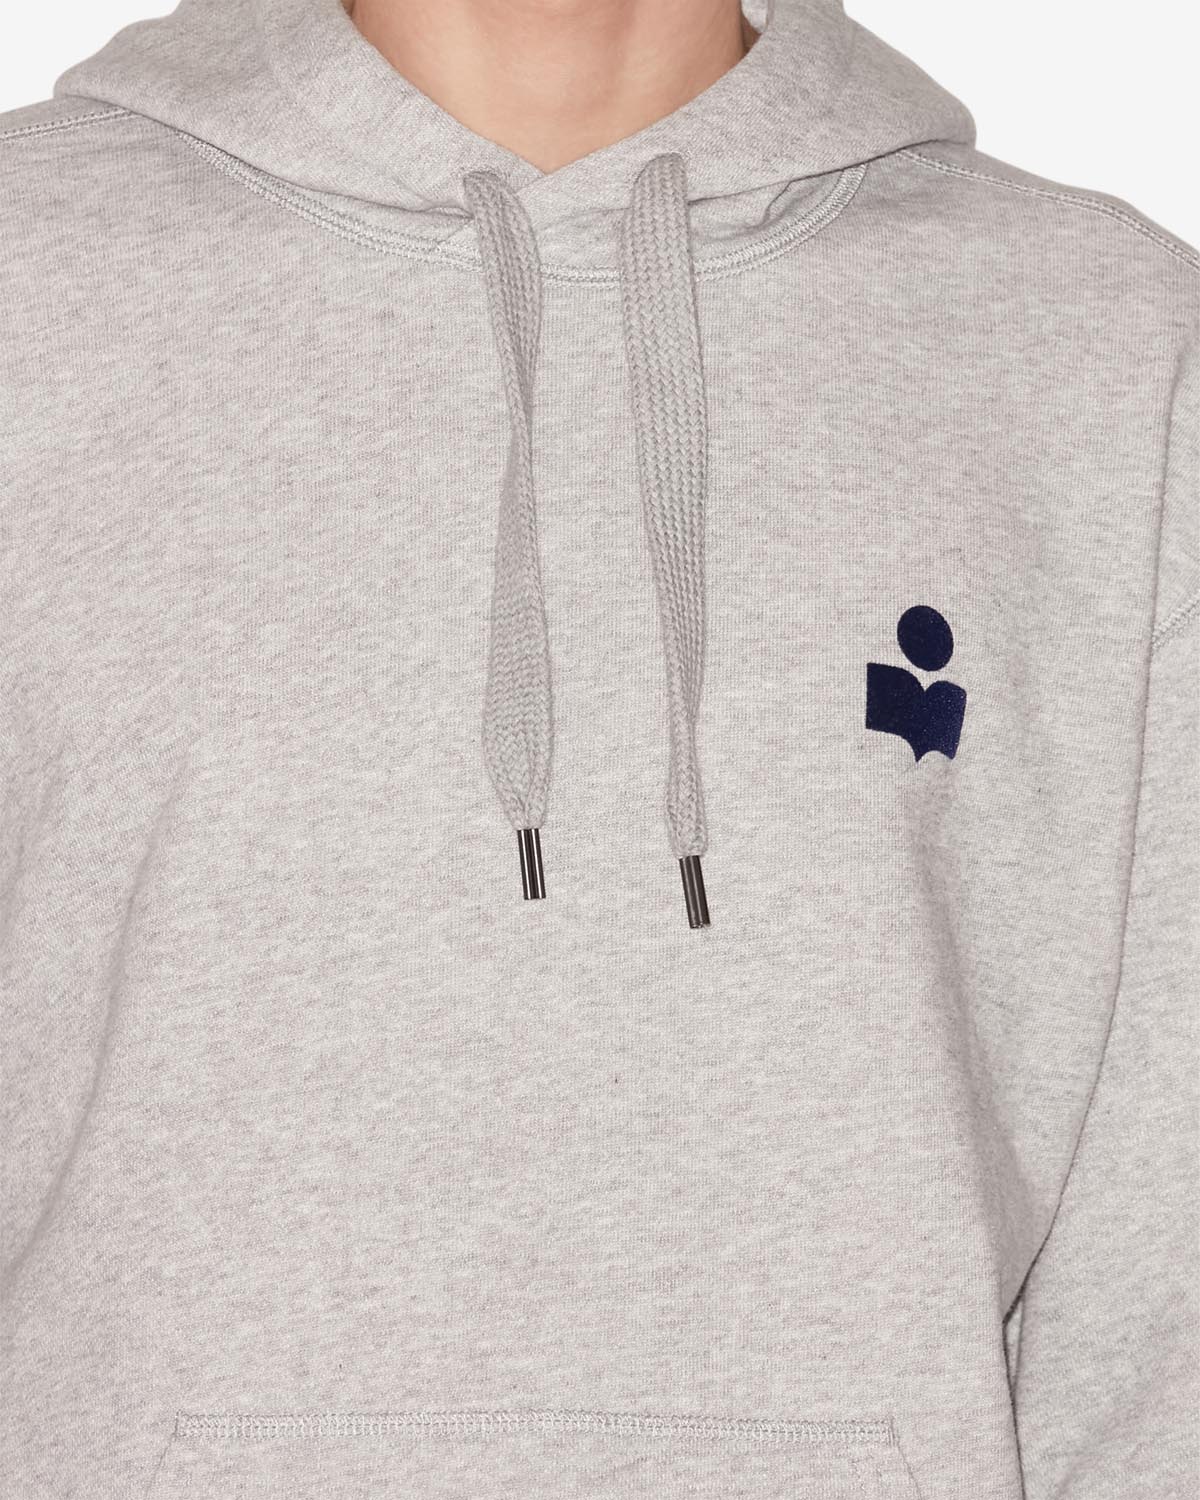 Sweatshirt matte mit logo Man Gray and midnight blue 2